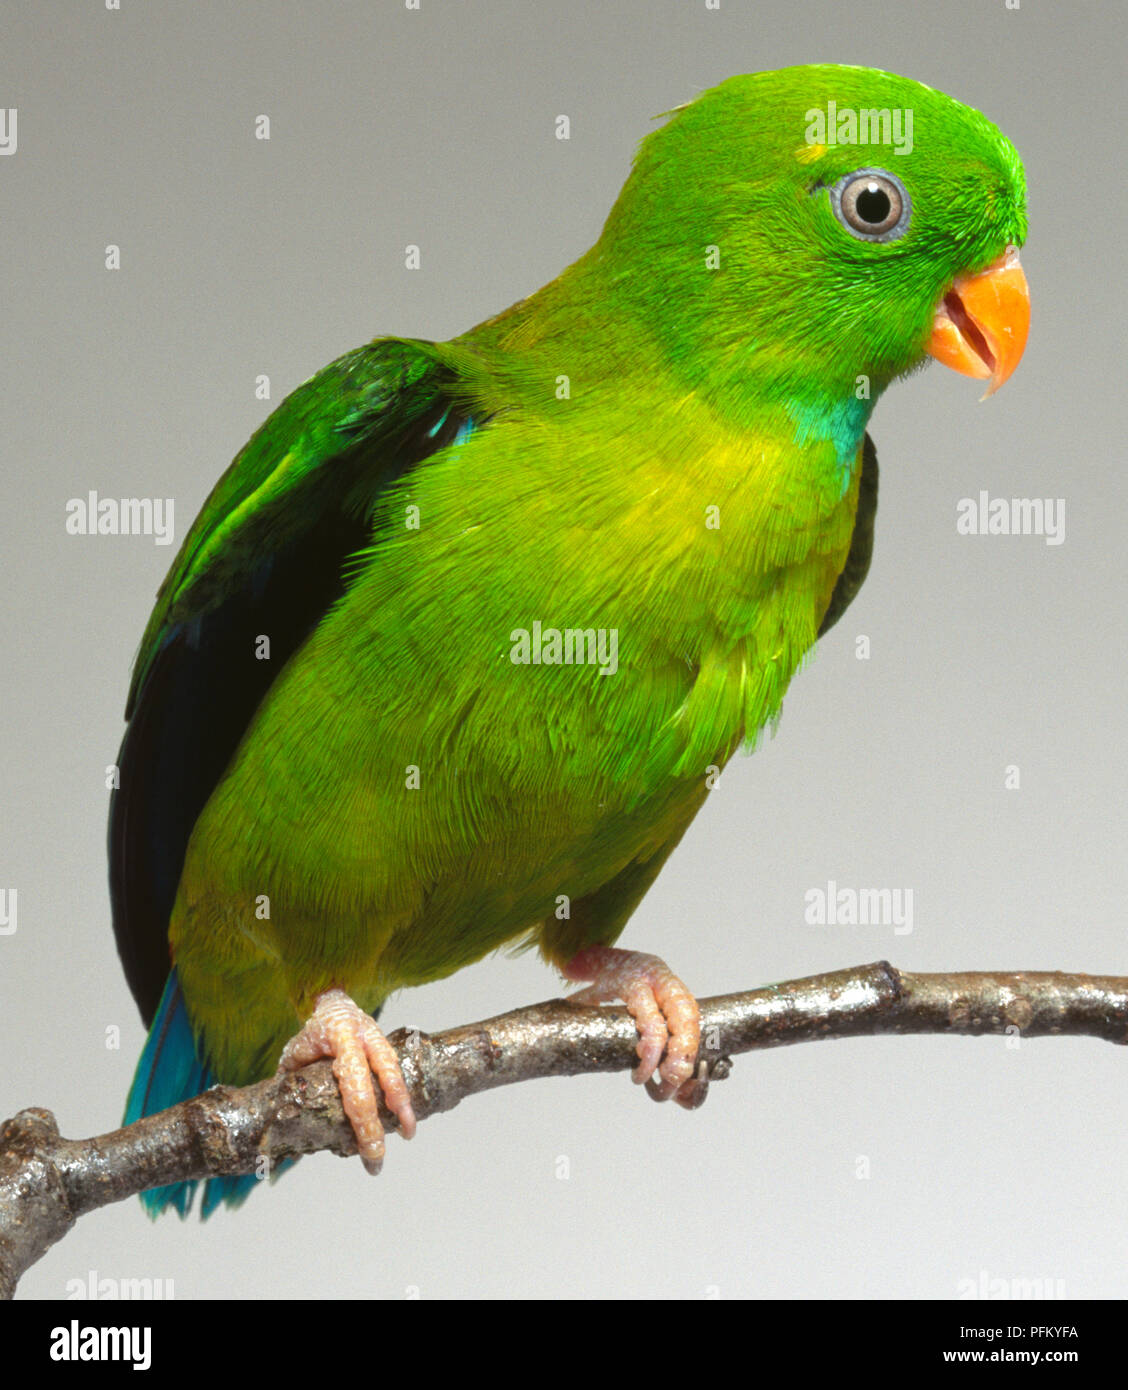 Vorderansicht eines Vernal Hanging-Parrot, Loriculus vernalis, mit Kopf im Profil, hocken auf einem schmalen Zweig. Stockfoto